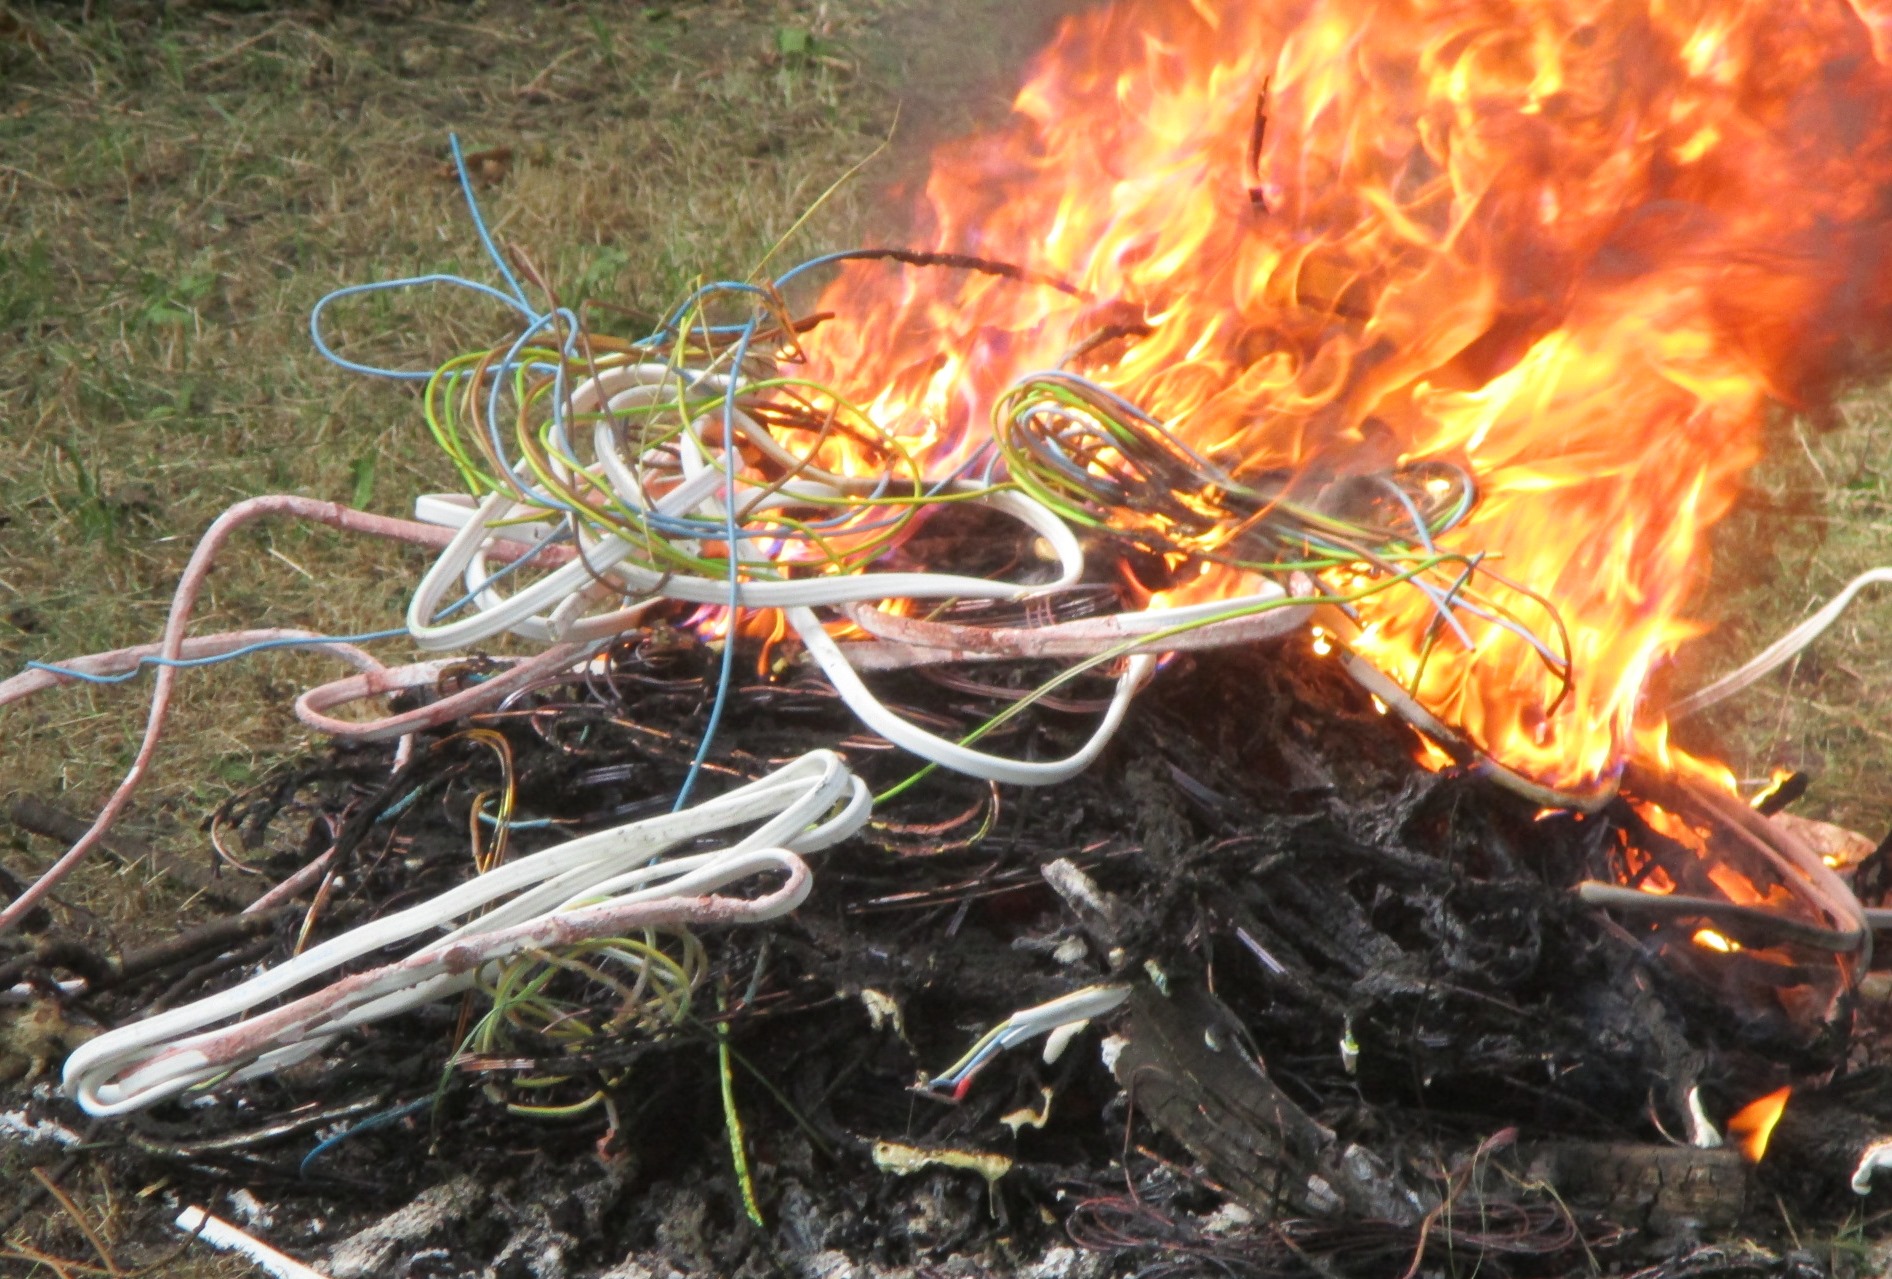 Płonące ognisko, w którym spalane są między innymi kable w plastikowej izolacji.